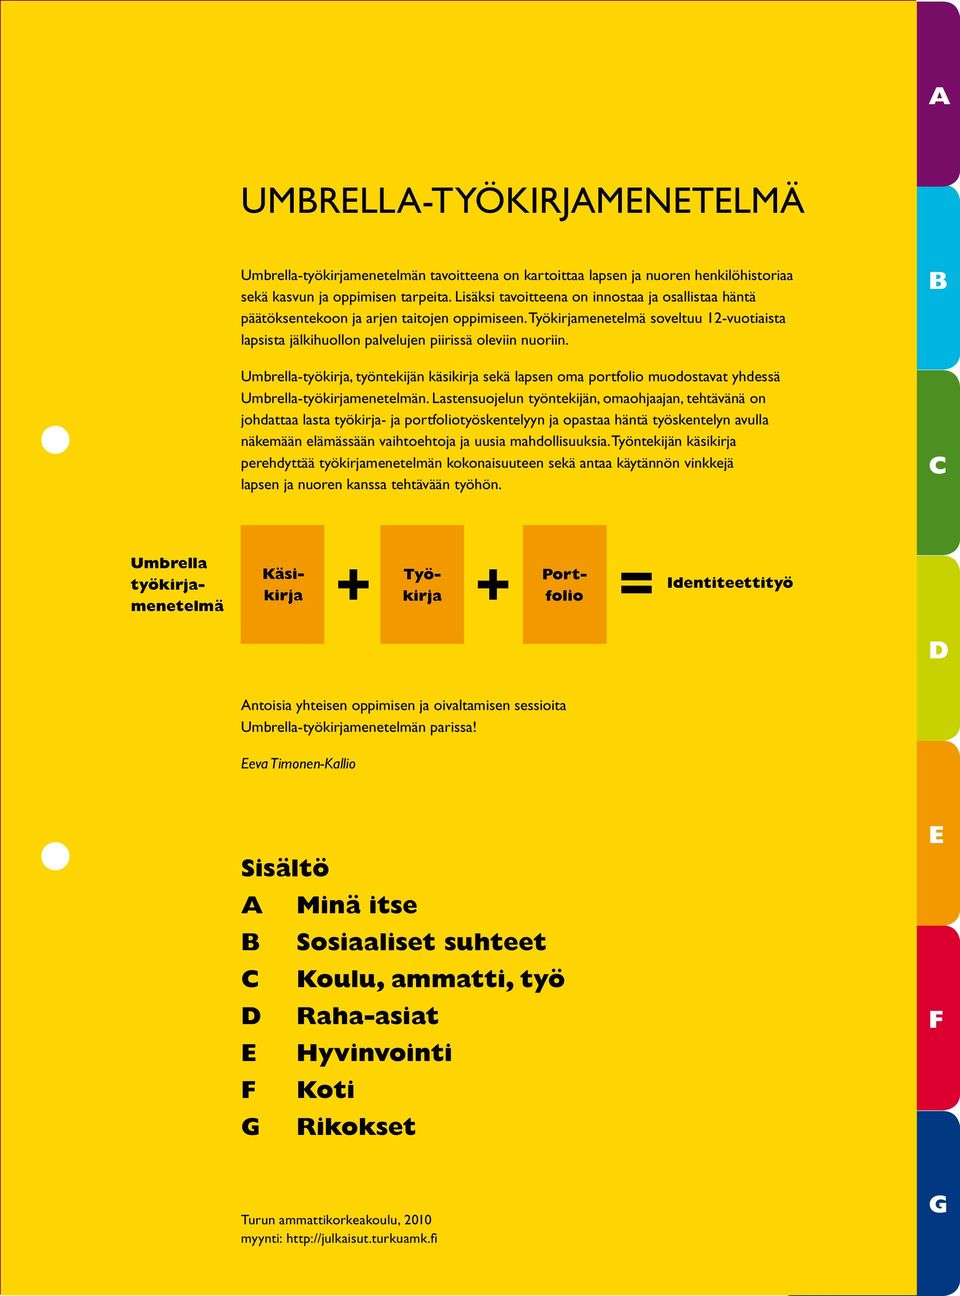 Umbrella-työkirja, työntekijän käsikirja sekä lapsen oma portfolio muodostavat yhdessä Umbrella-työkirjamenetelmän.